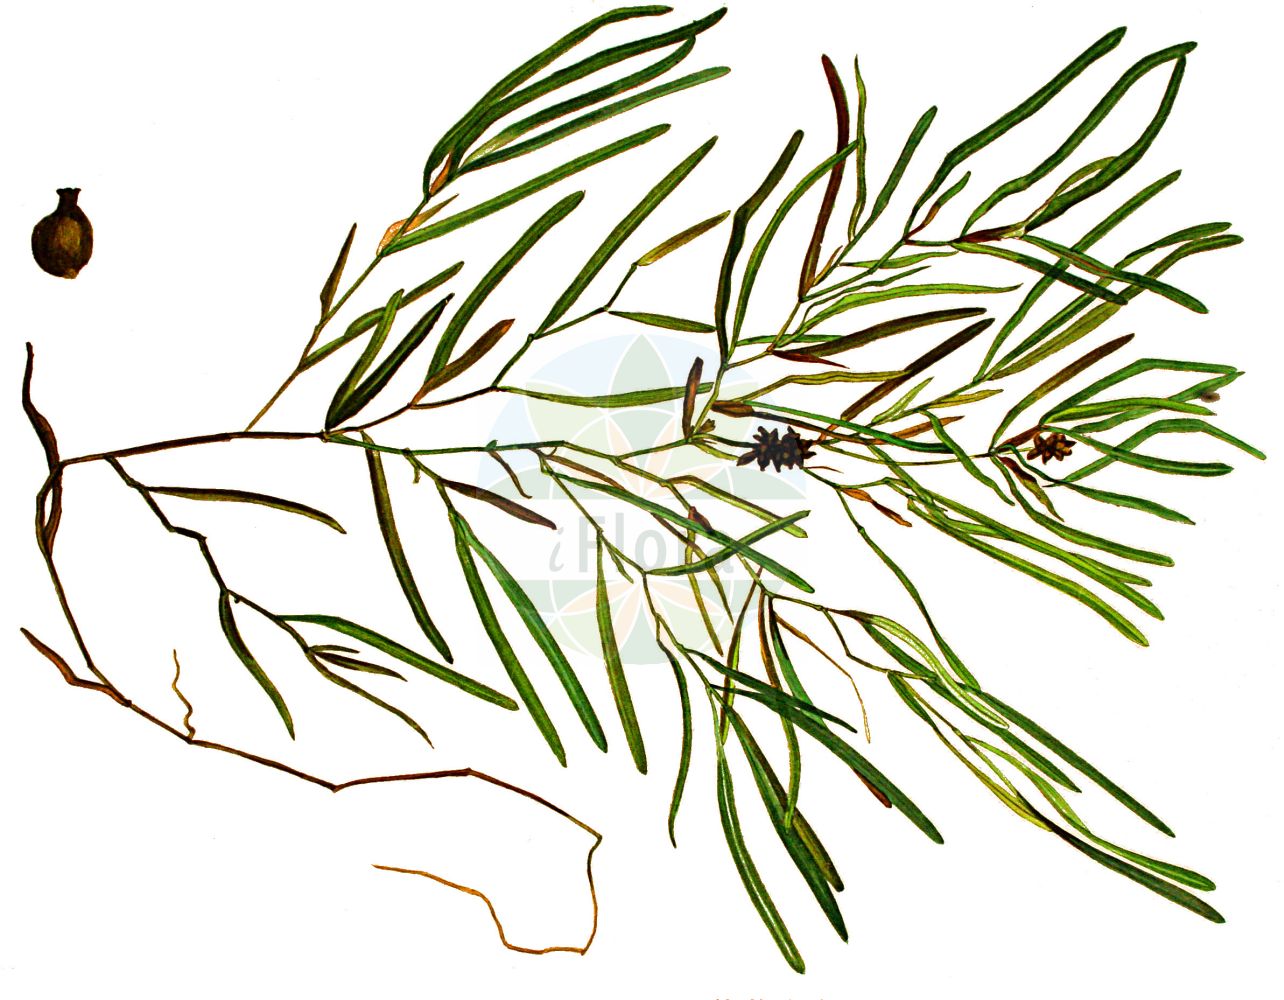 Historische Abbildung von Potamogeton obtusifolius (Stumpfblättriges Laichkraut - Blunt-leaved Pondweed). Das Bild zeigt Blatt, Bluete, Frucht und Same. ---- Historical Drawing of Potamogeton obtusifolius (Stumpfblättriges Laichkraut - Blunt-leaved Pondweed). The image is showing leaf, flower, fruit and seed.(Potamogeton obtusifolius,Stumpfblättriges Laichkraut,Blunt-leaved Pondweed,Potamogeton obtusifolius,Stumpfblaettriges Laichkraut,Blunt-leaved Pondweed,Bluntleaf Pondweed,Broad-leaved Pondweed,Grassy Pondweed,Potamogeton,Laichkraut,Pondweed,Potamogetonaceae,Laichkrautgewächse,Pondweed family,Blatt,Bluete,Frucht,Same,leaf,flower,fruit,seed,Kops (1800-1934))